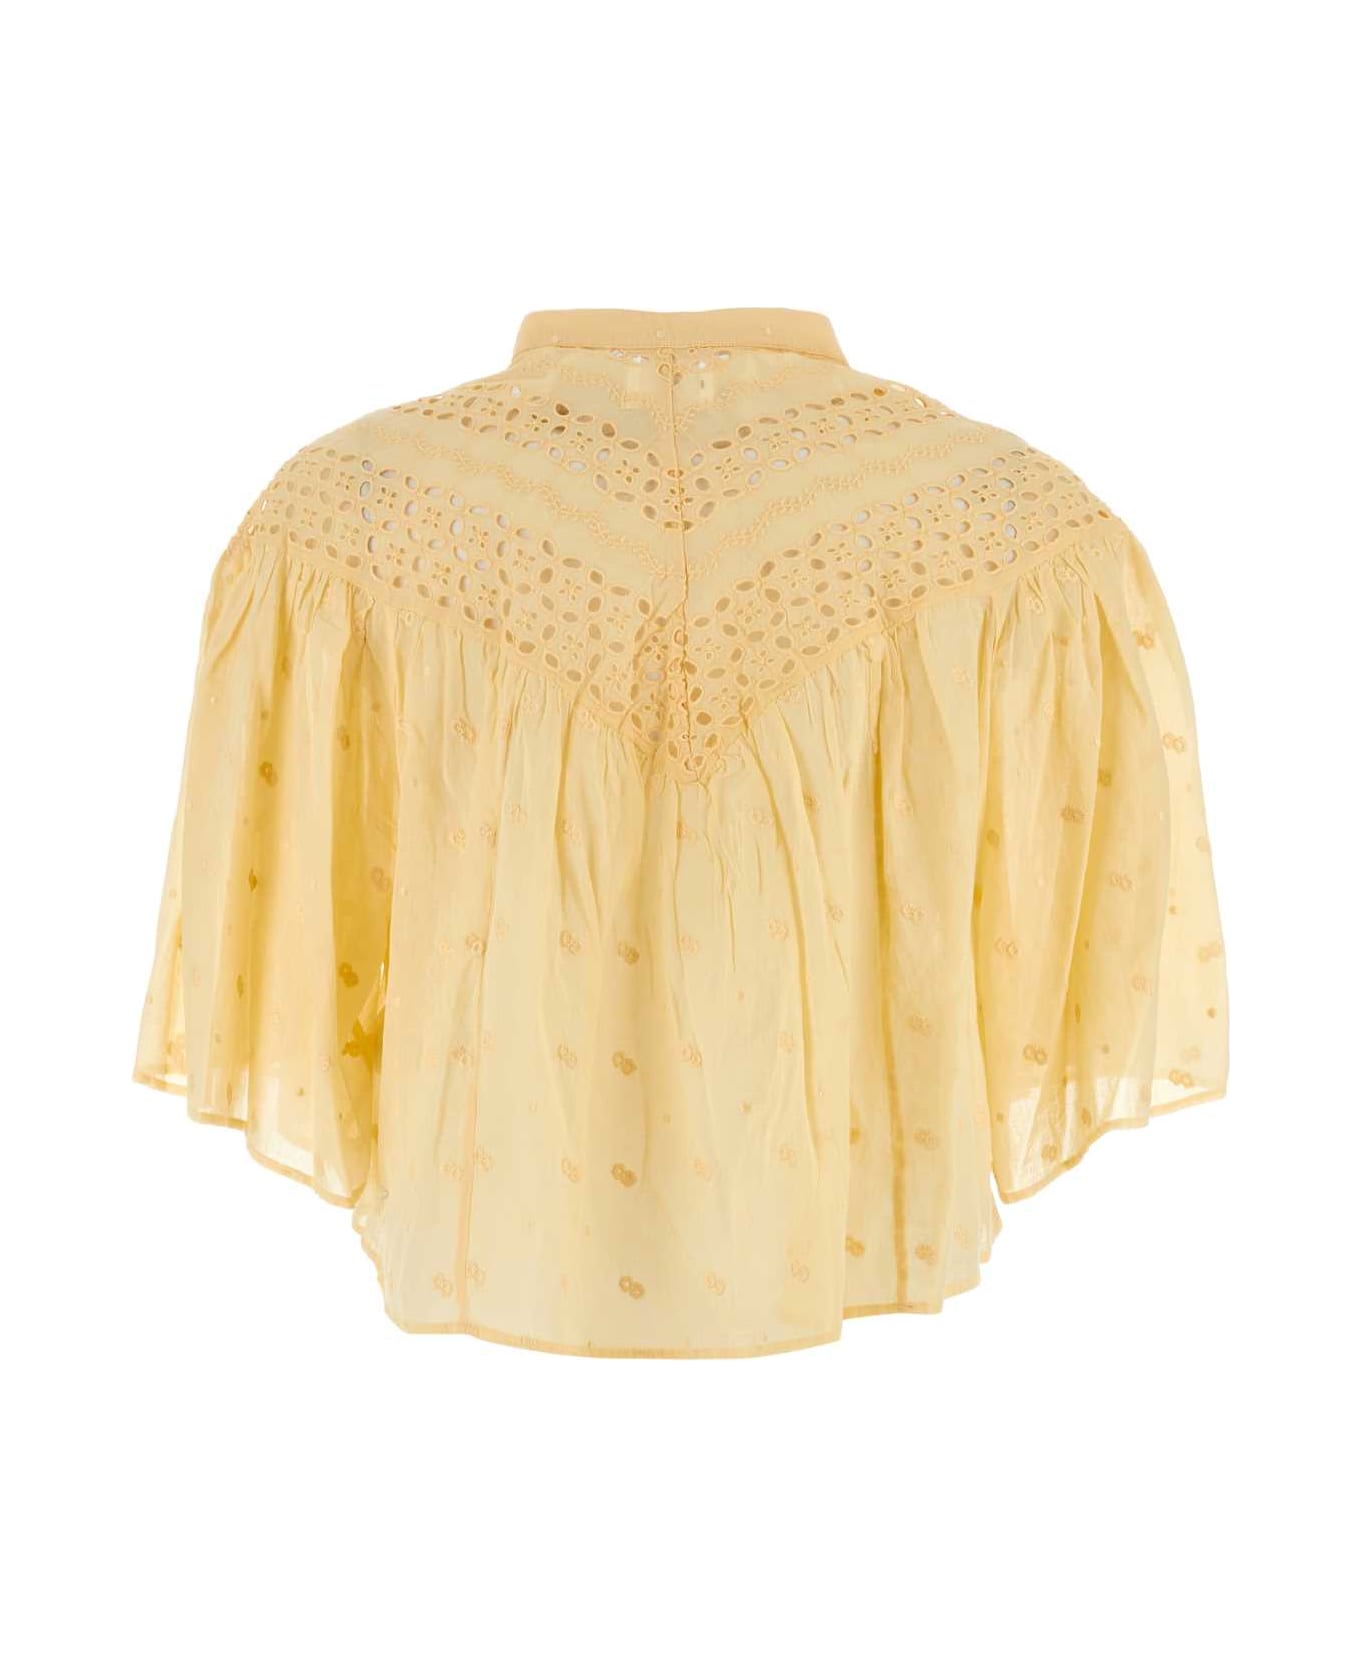 Marant Étoile Yellow Cotton Safi Blouse - SUNLIGHT